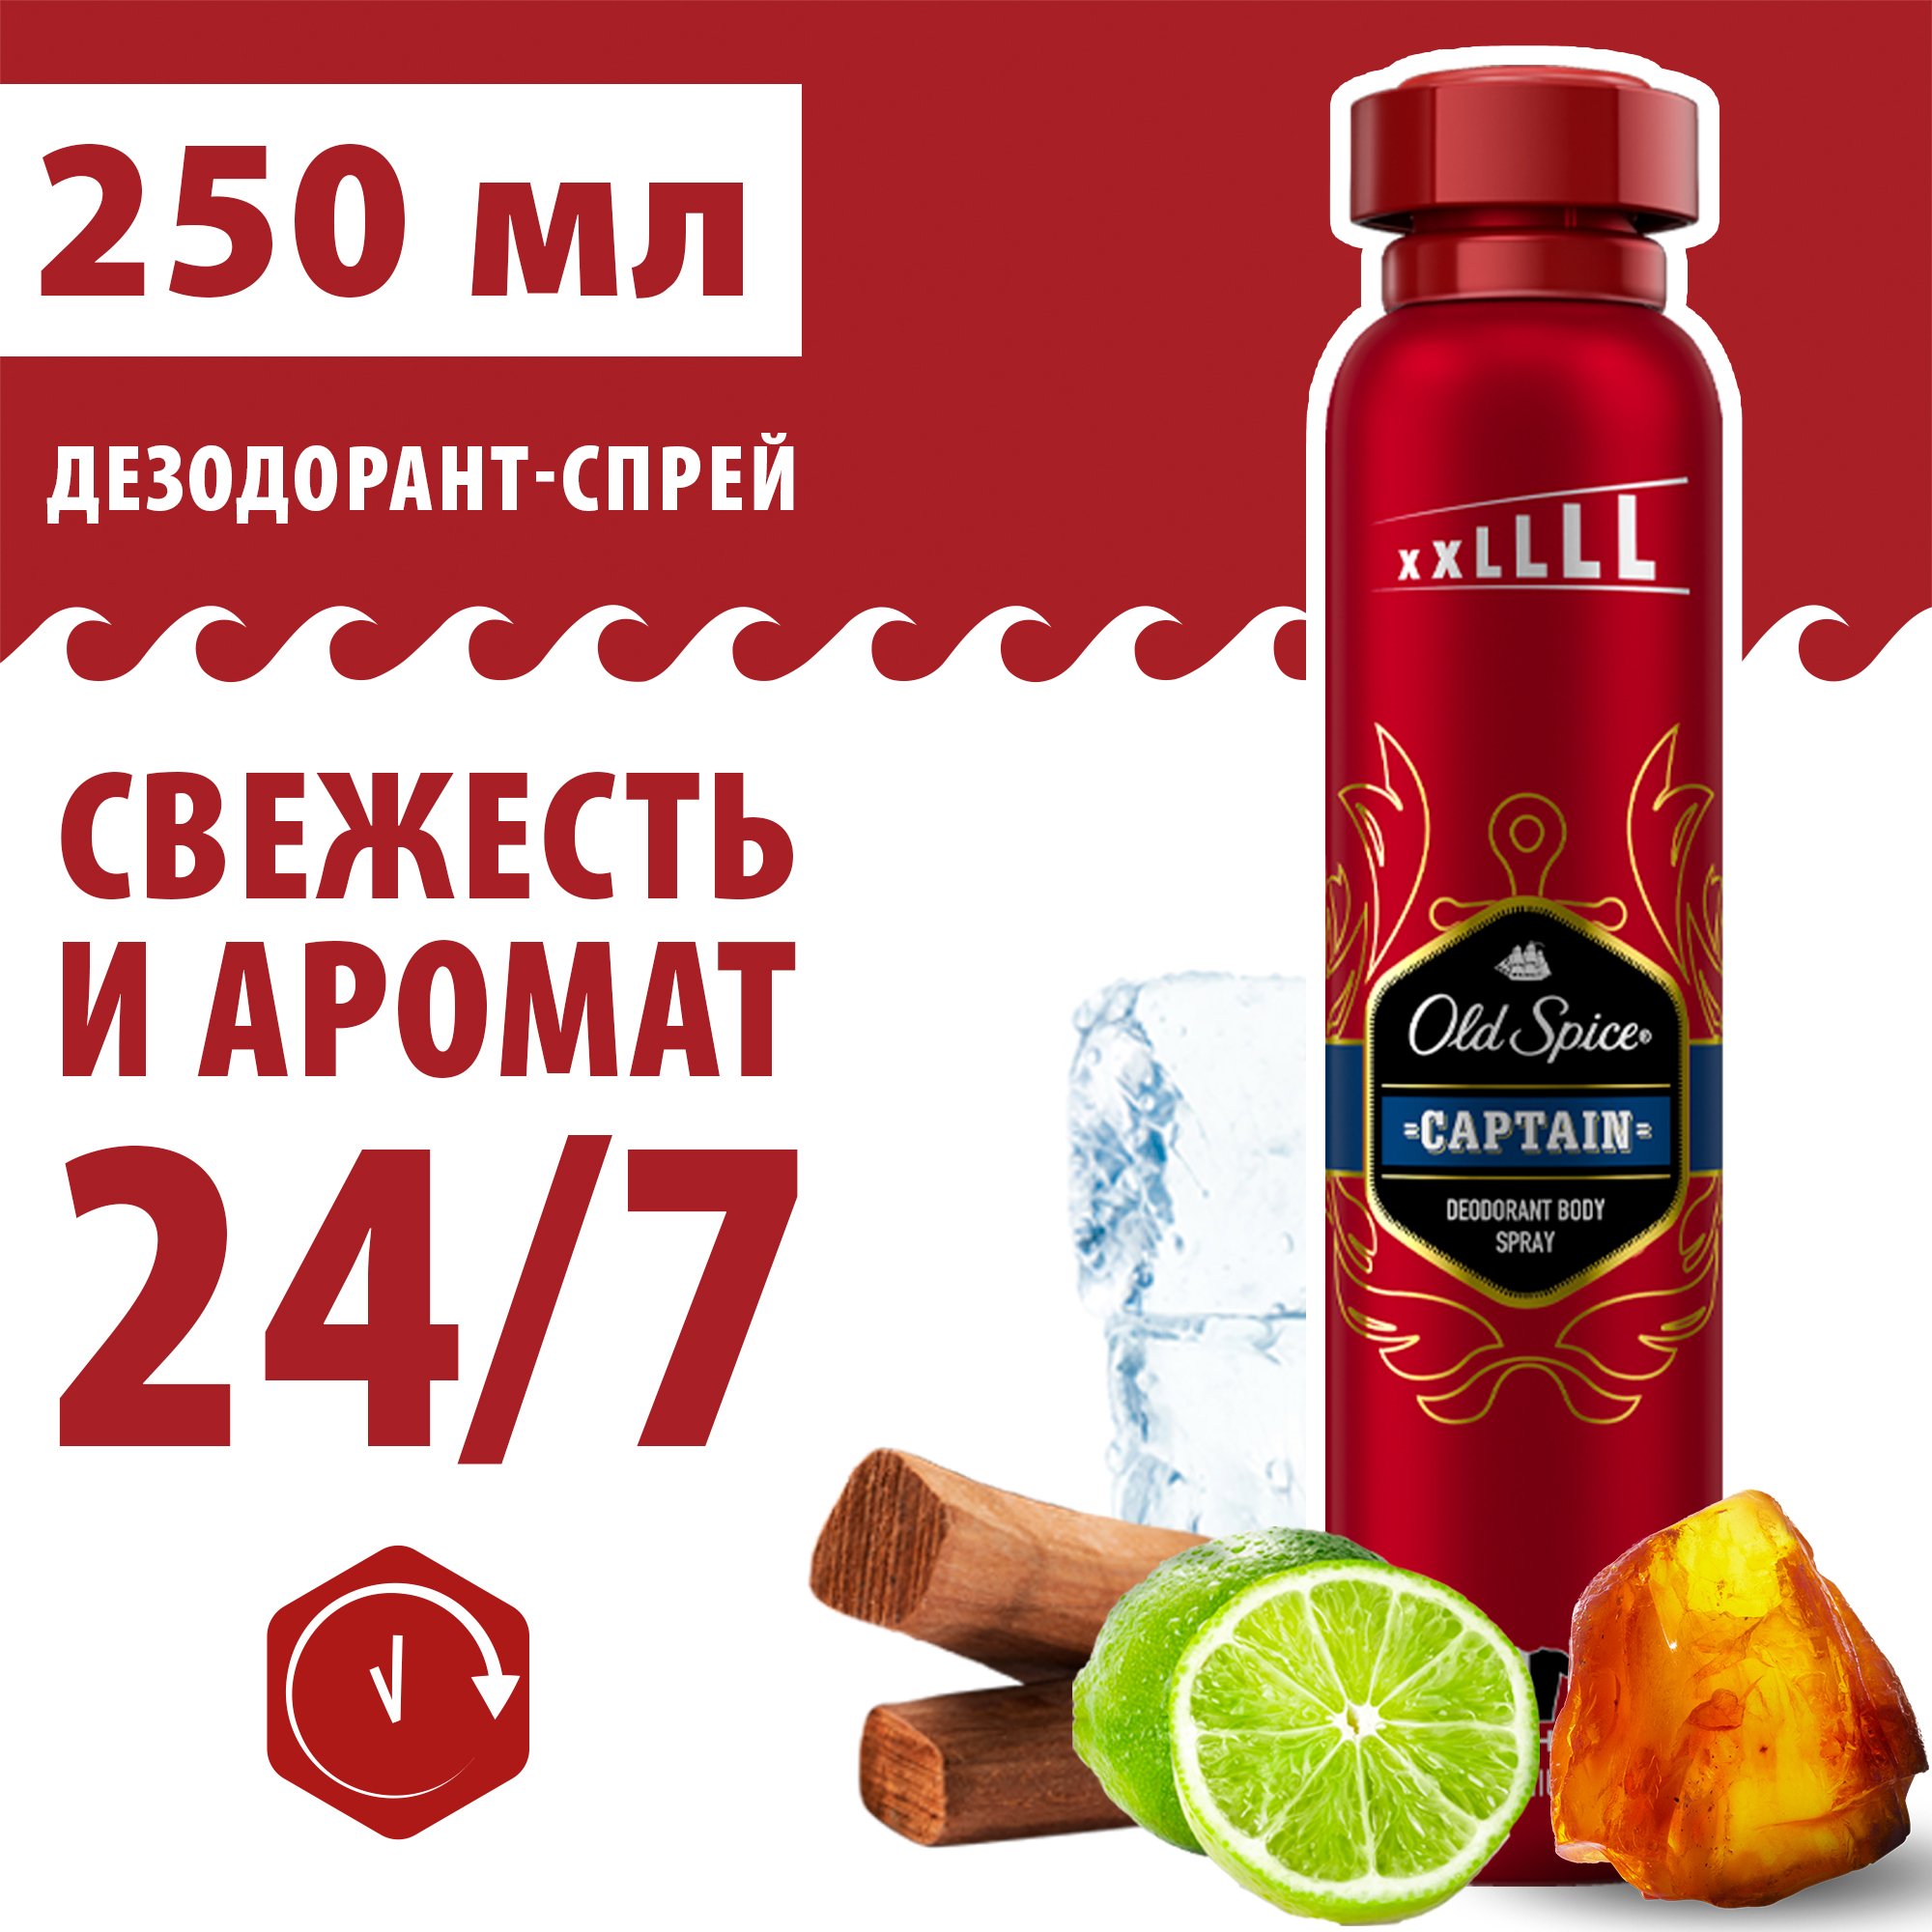 Аэрозольный дезодорант OLD SPICE Captain, 250 мл - купить в Мегамаркет Москва Пушкино, цена на Мегамаркет